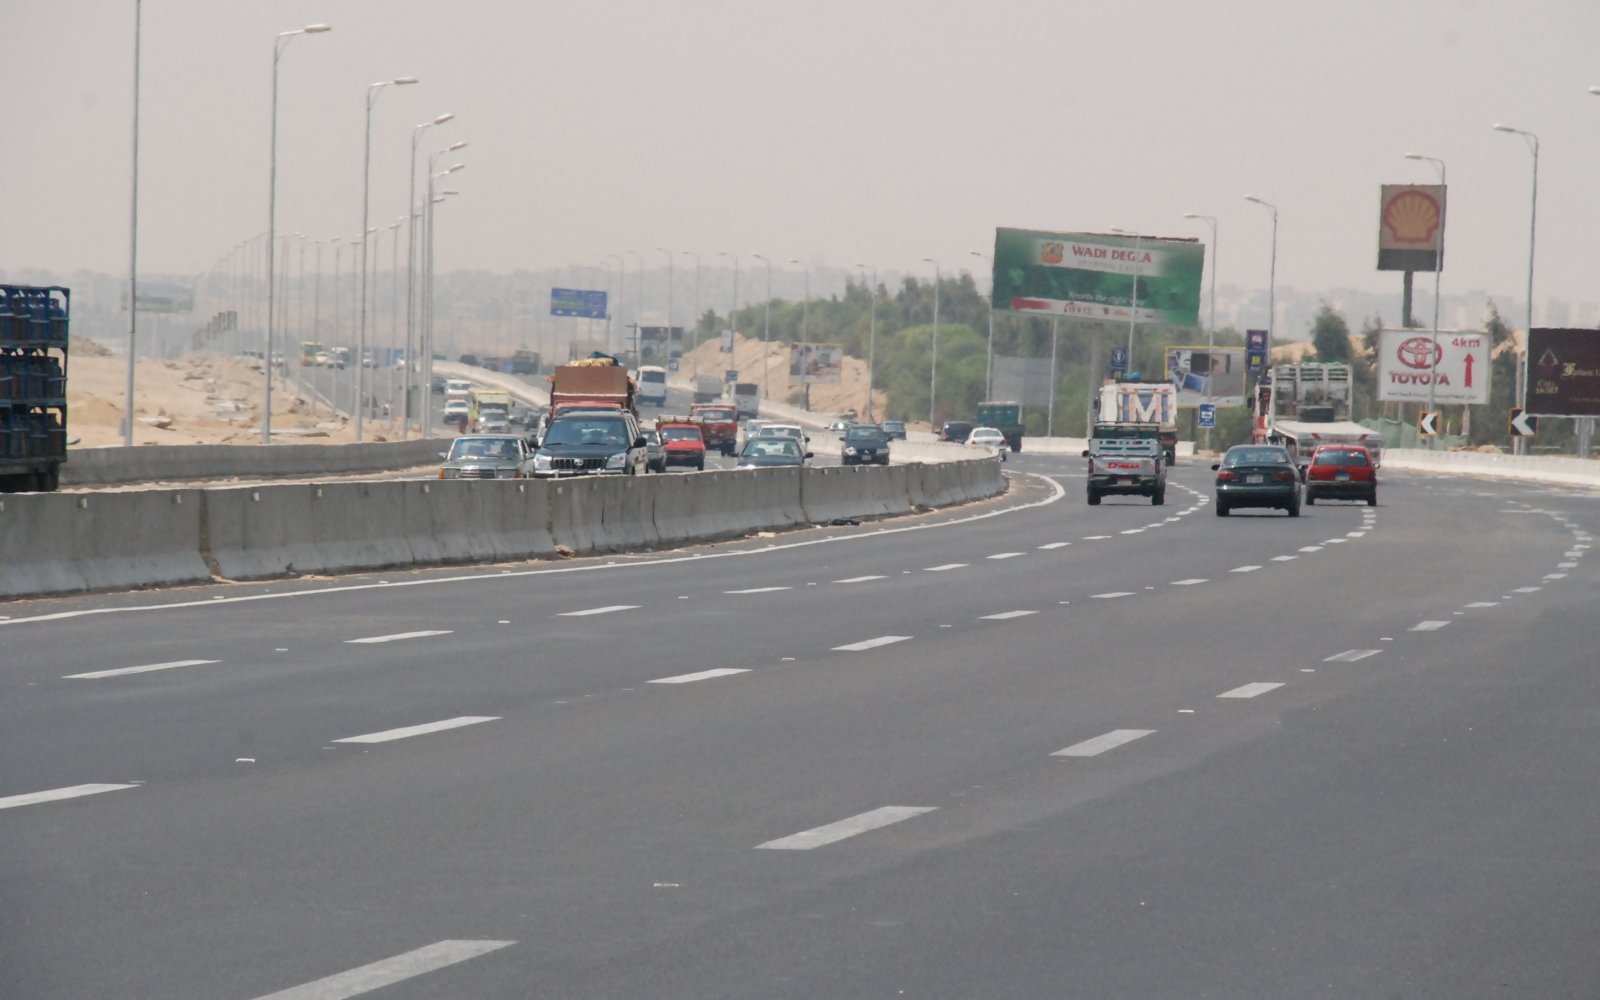 الإدارة العامة للمرور تُعلن اليوم الثلاثاء 21 أبريل عن تحويلات جديدة على الطريق الدائري